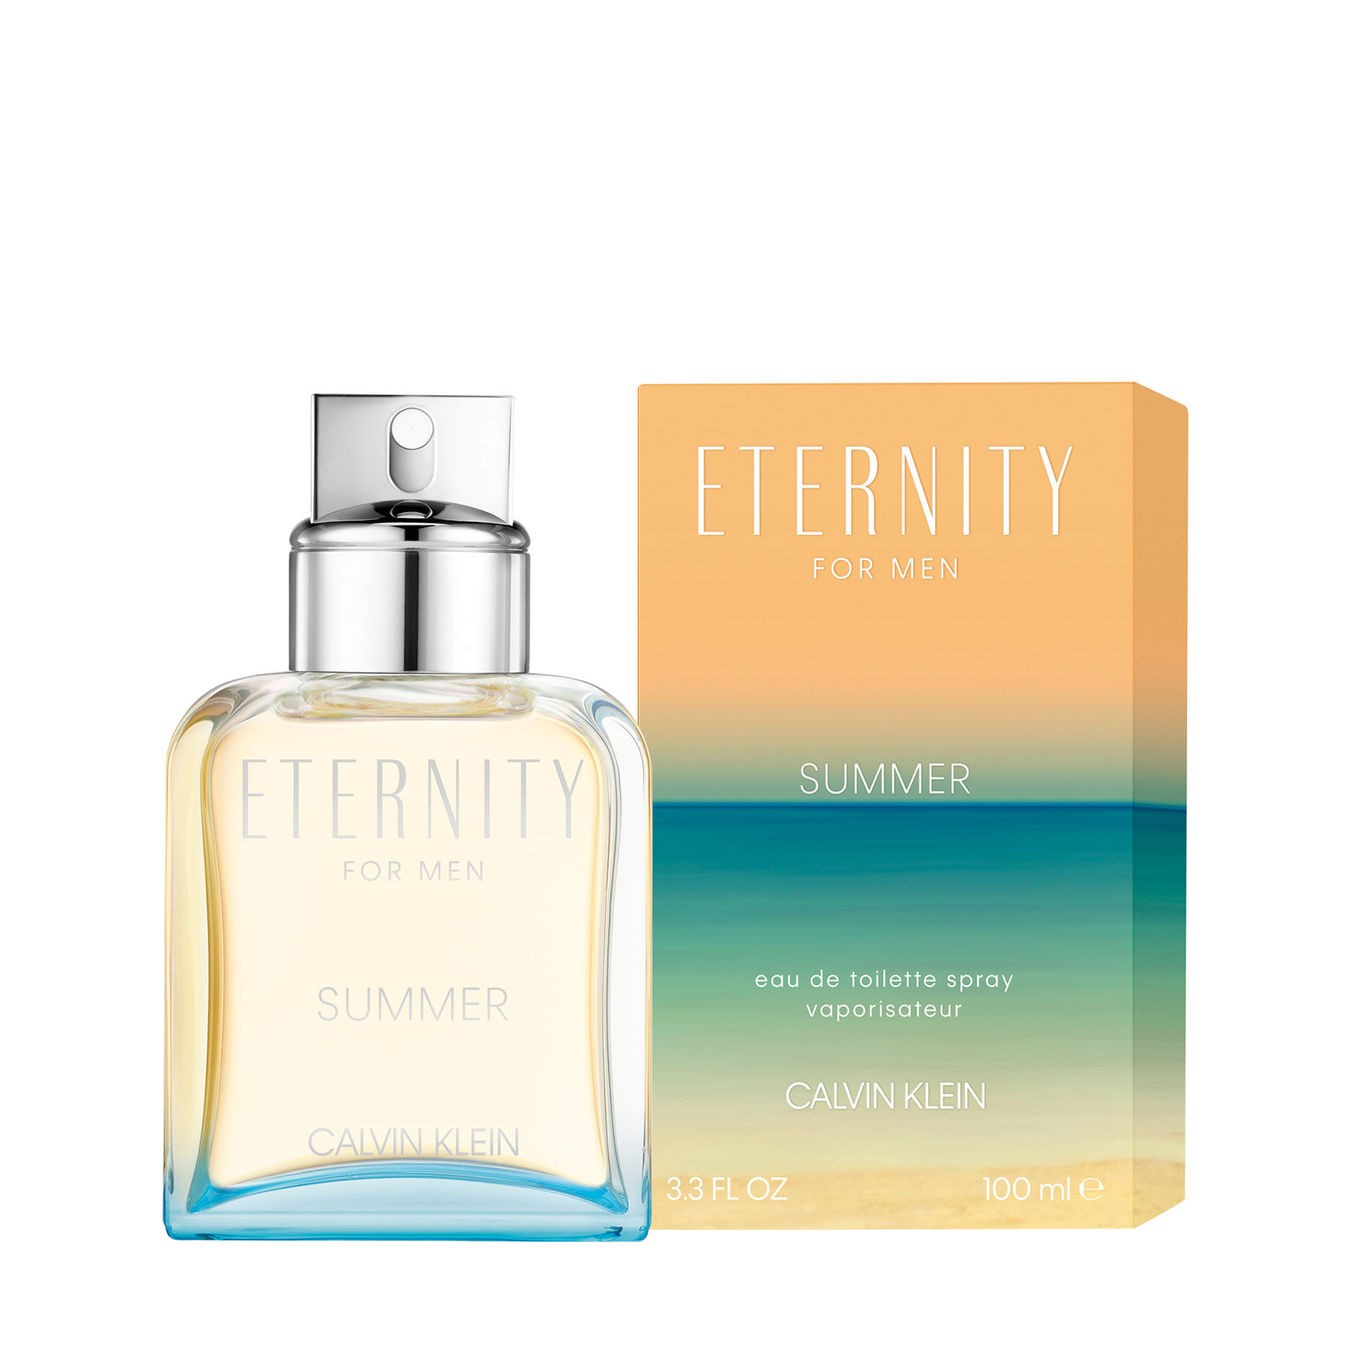 Изображение парфюма Calvin Klein Eternity Summer Men 2019